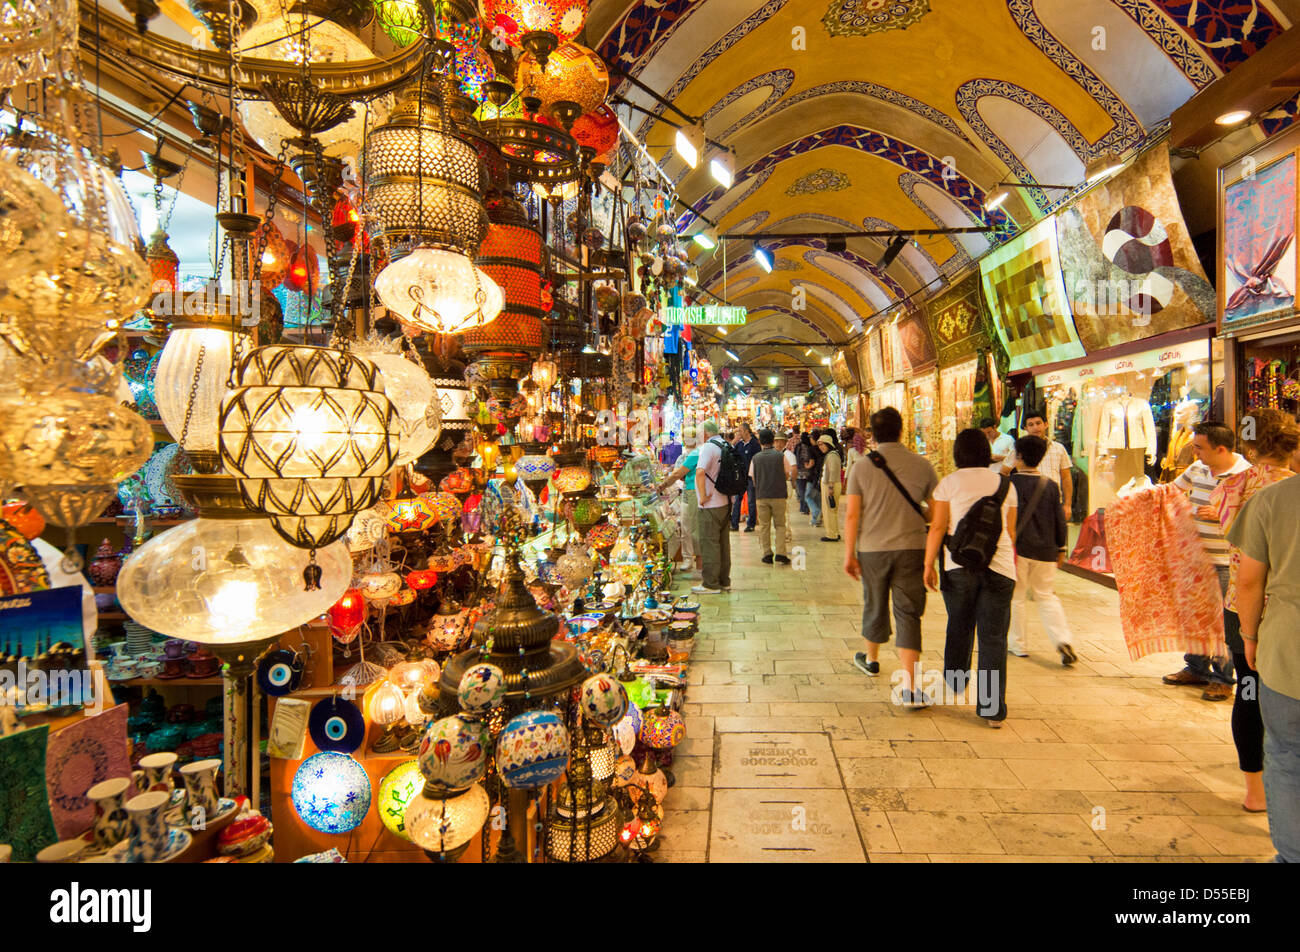 Les touristes dans le Grand Bazar, Kapali Carsi, Sultanahmet, Istanbul, Turquie Banque D'Images